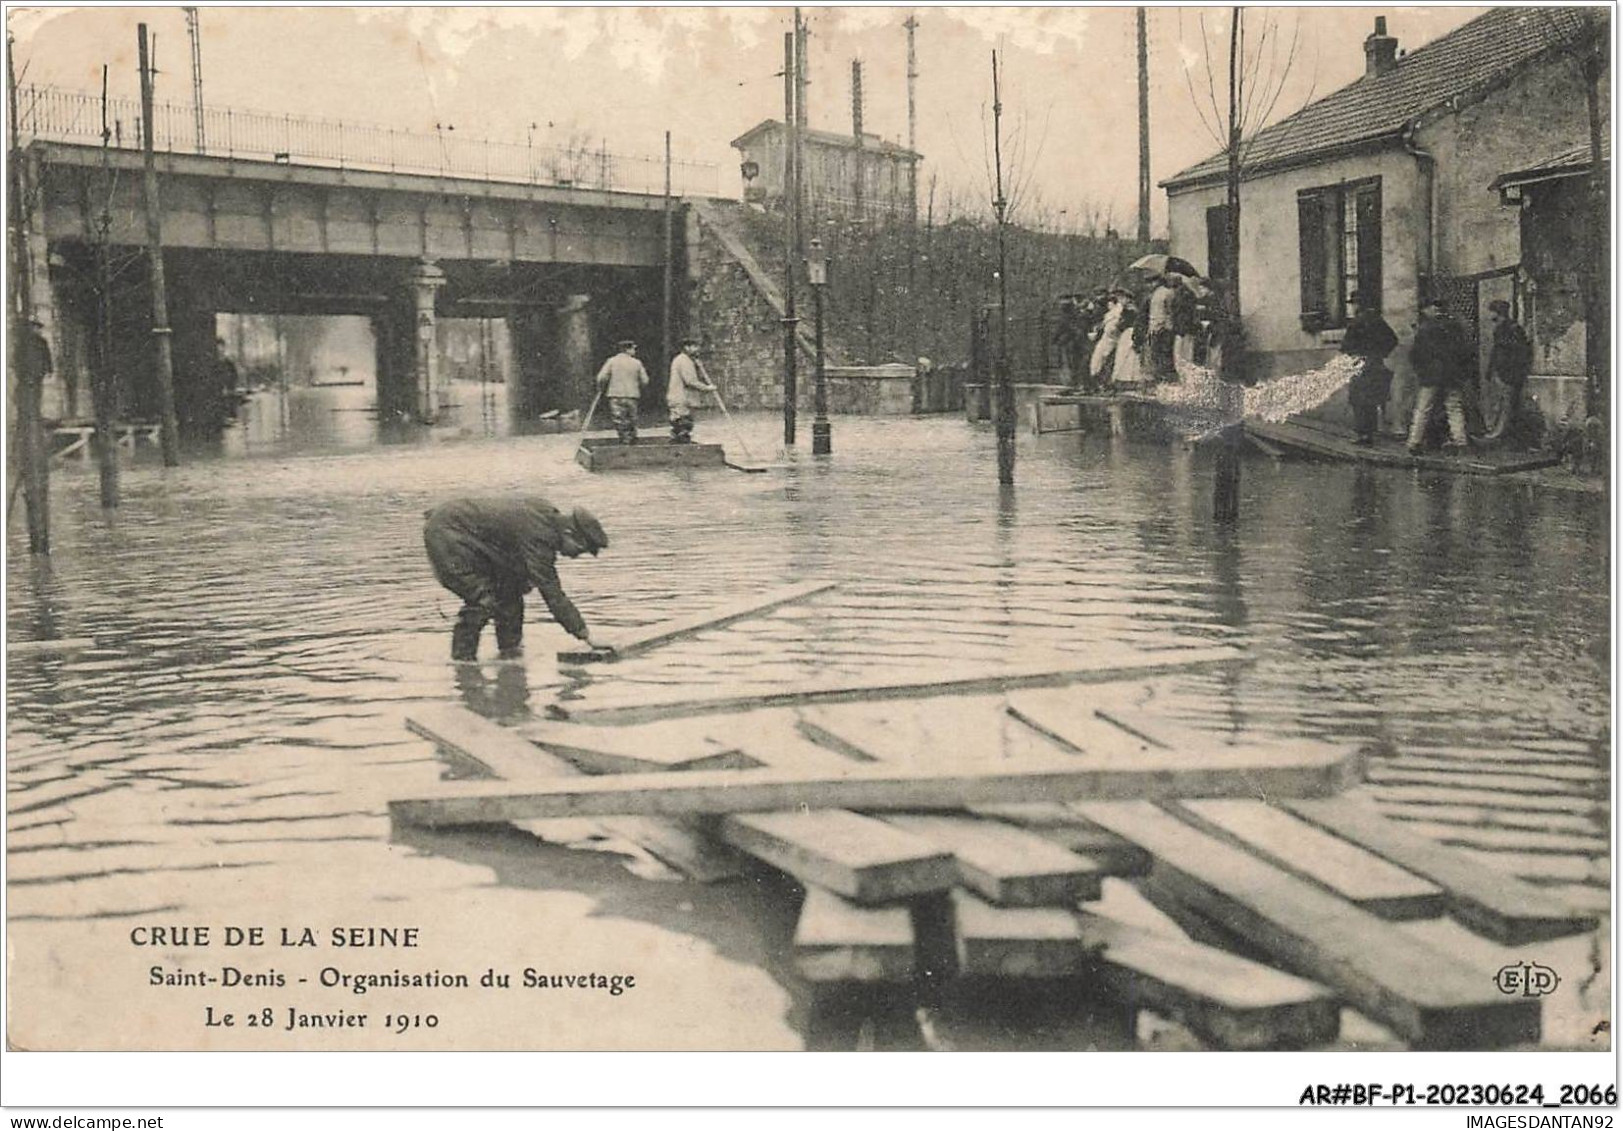 AR#BFP1-93-1035 - SAINT-DENIS - Crue De La Seine - Organisation Du Sauvetage, Le 28 Janvier 1910 - Saint Denis